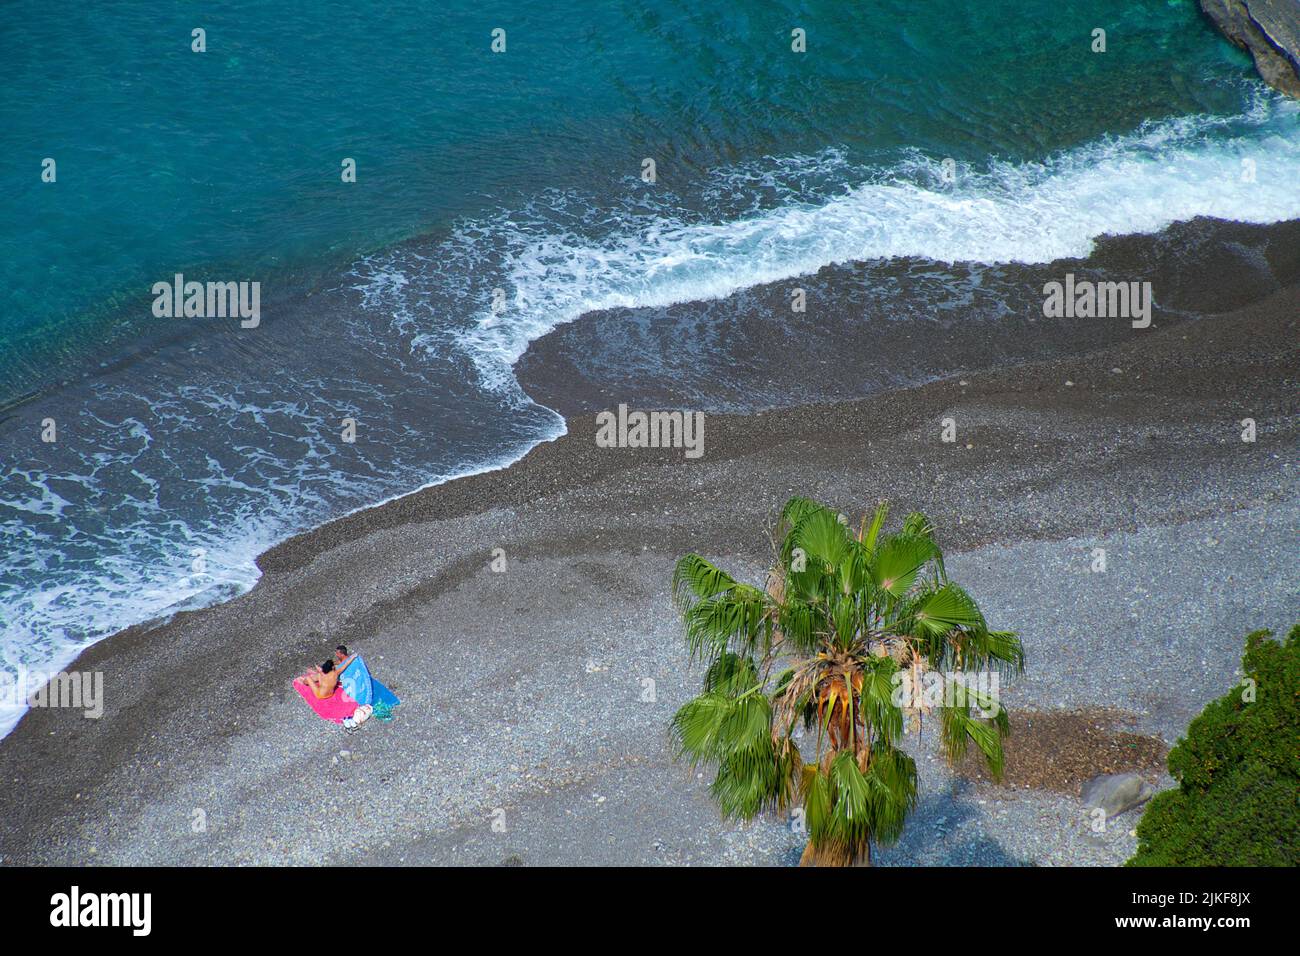 Villeggianti sulla spiaggia di Positano, Costiera Amalfitana, Patrimonio dell'Umanità dell'UNESCO, Campania, Italia, Mediterraneo, Europa Foto Stock